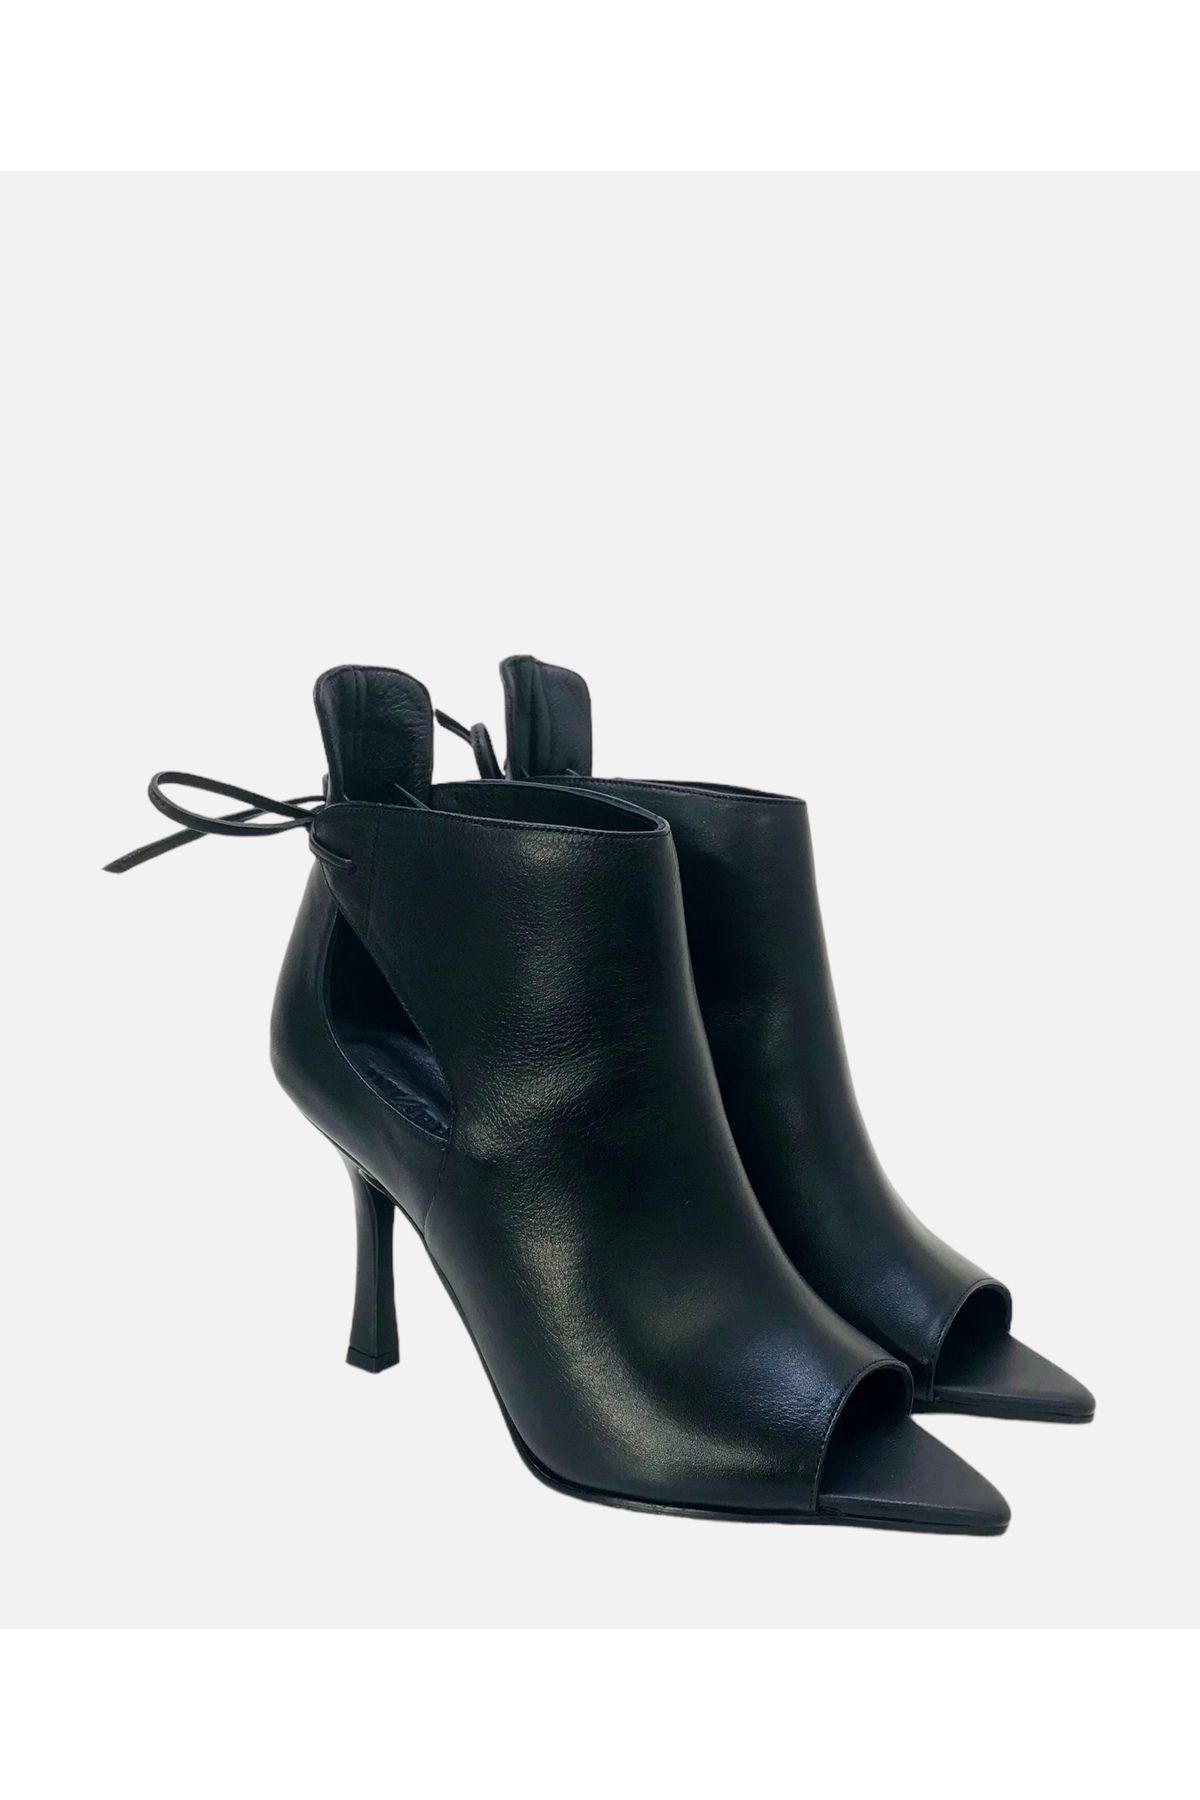 Stella Pendenza Hakiki Deri Siyah Kadın Yüksek Topuklu Sivri Burun Arkadan Bağcıklı Stiletto Ayakkabı SP-1976-4